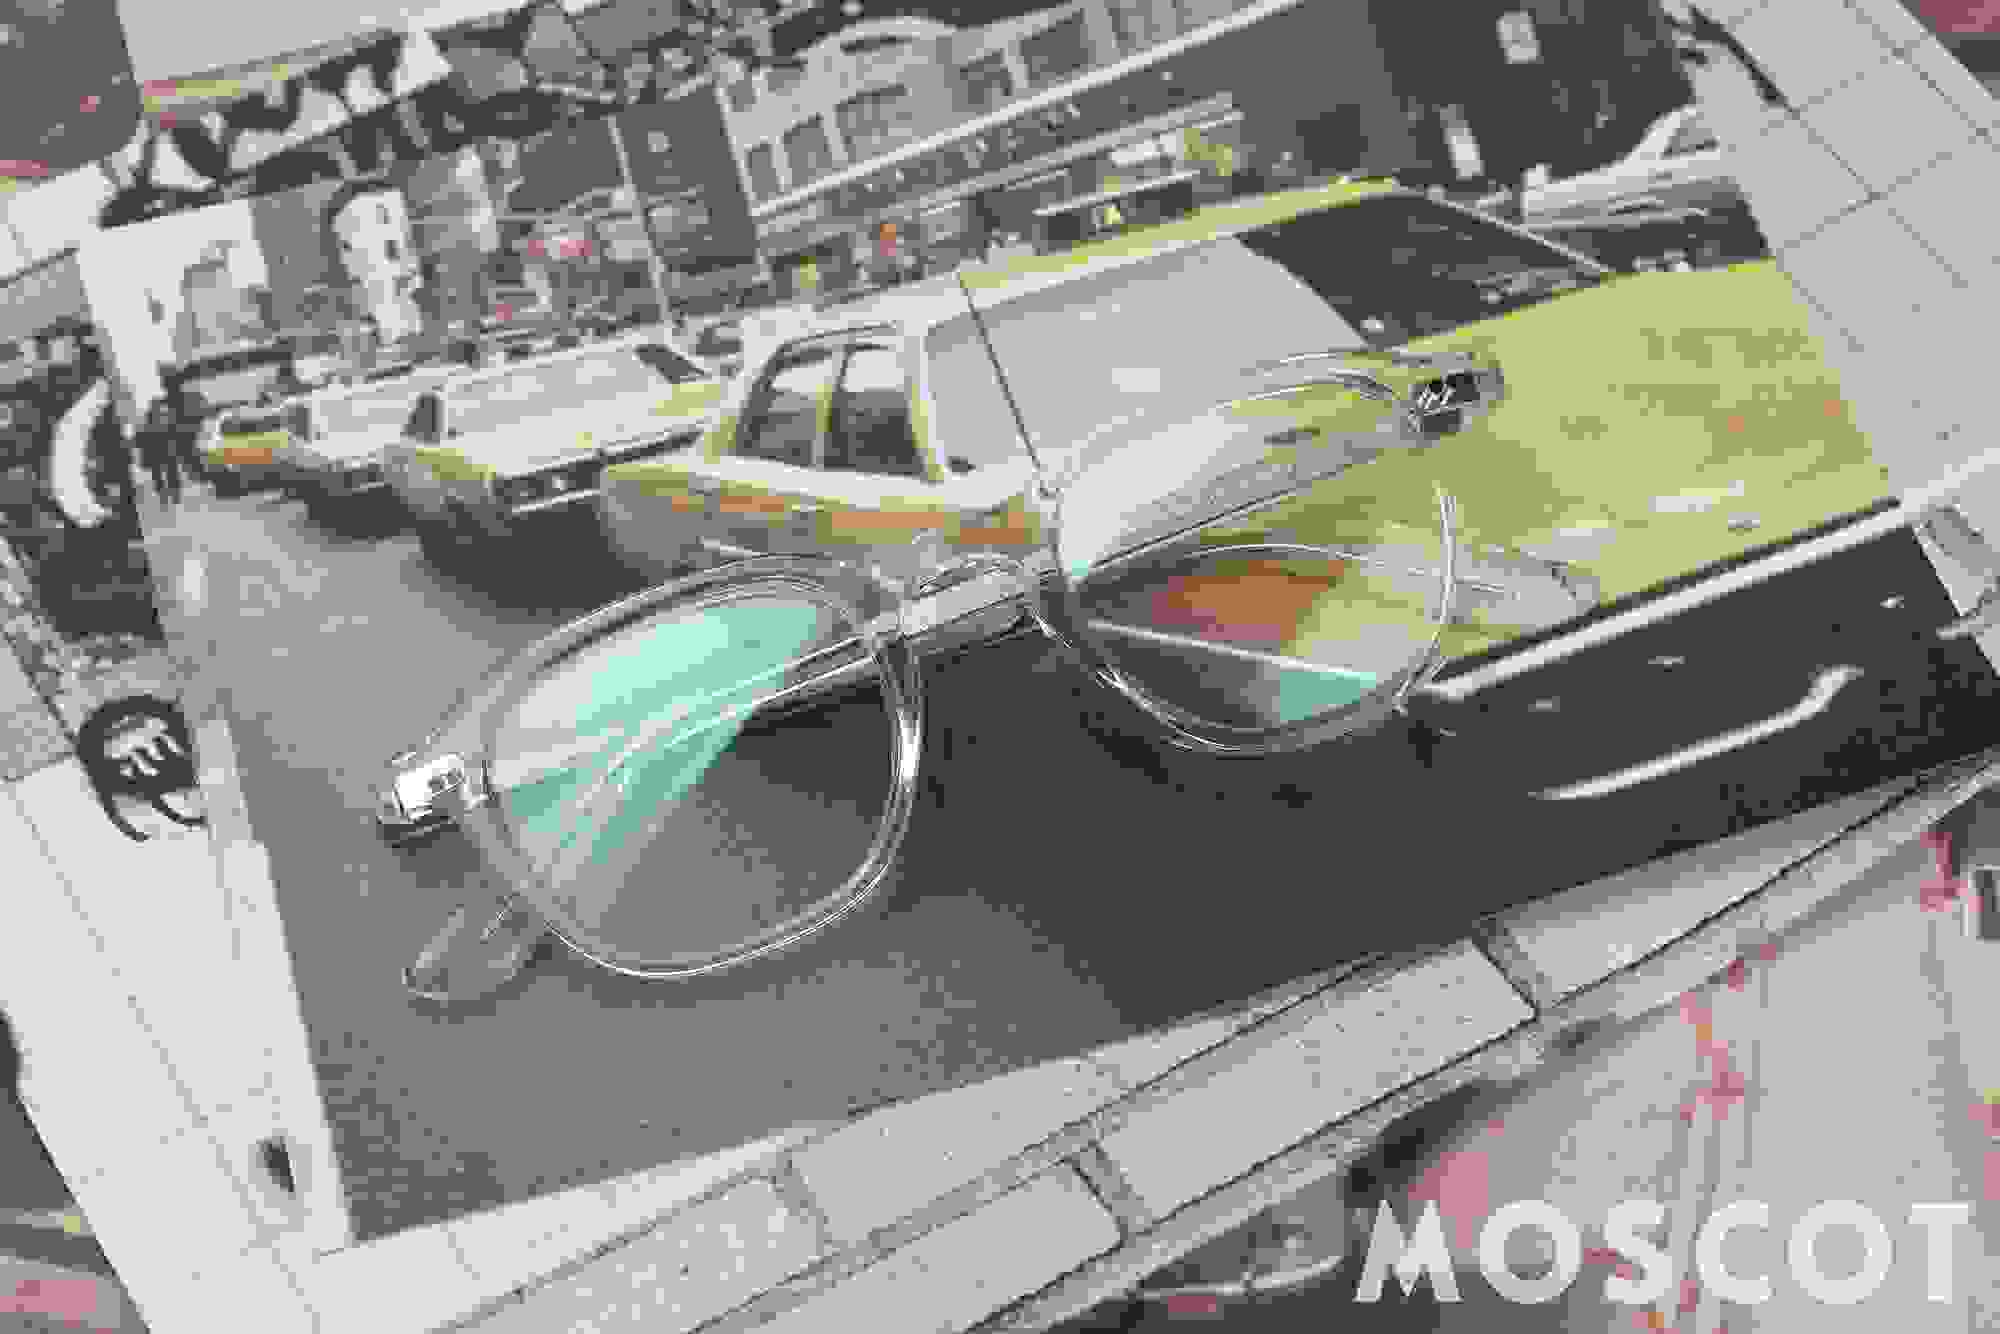 Moscot Korrekturbrille mit durchsichtigem Rahmen, die auf mehreren Fotoausdrücken liegt.